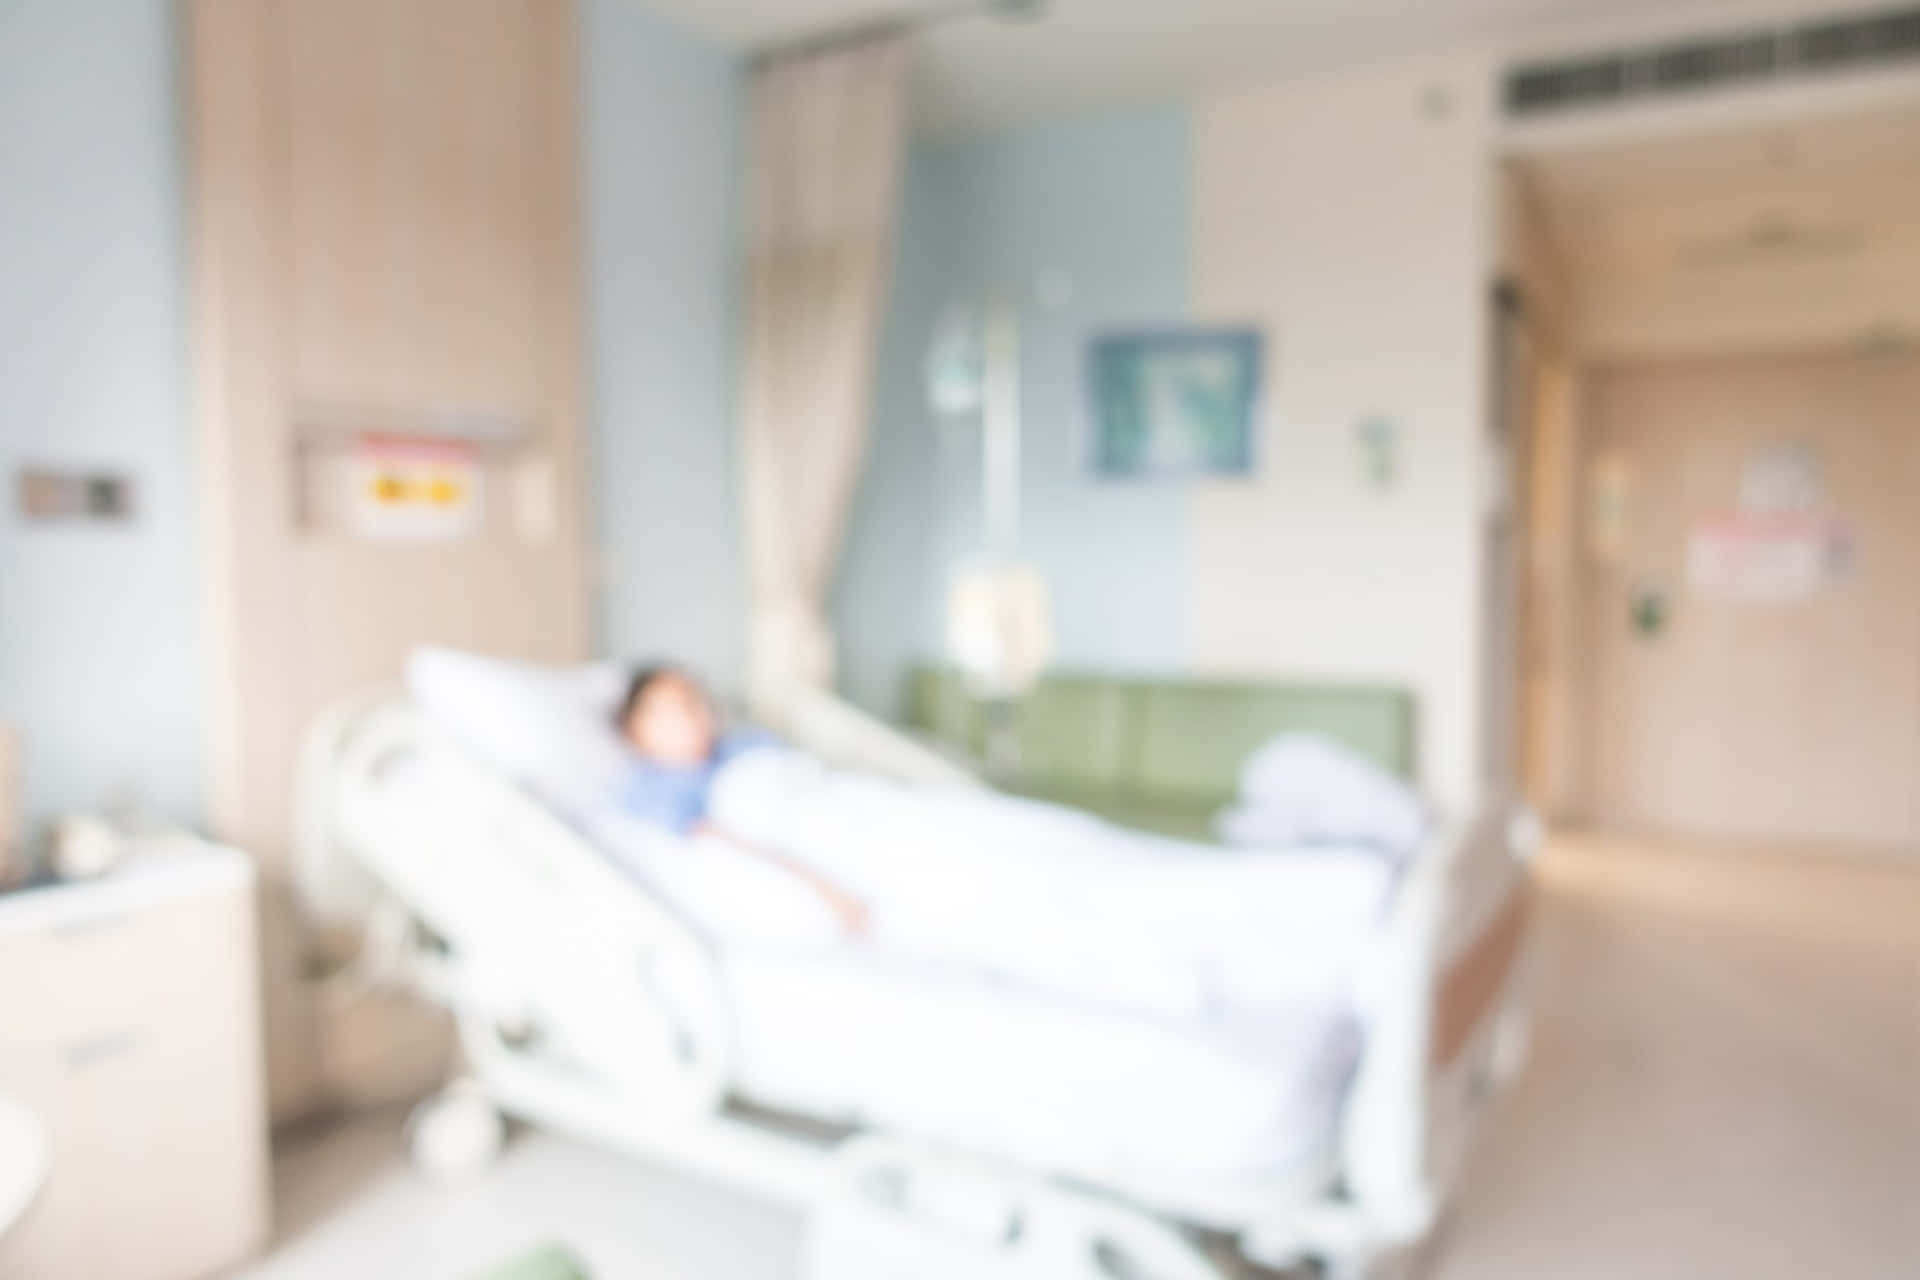 A Blurry Image Of A Hospital Room